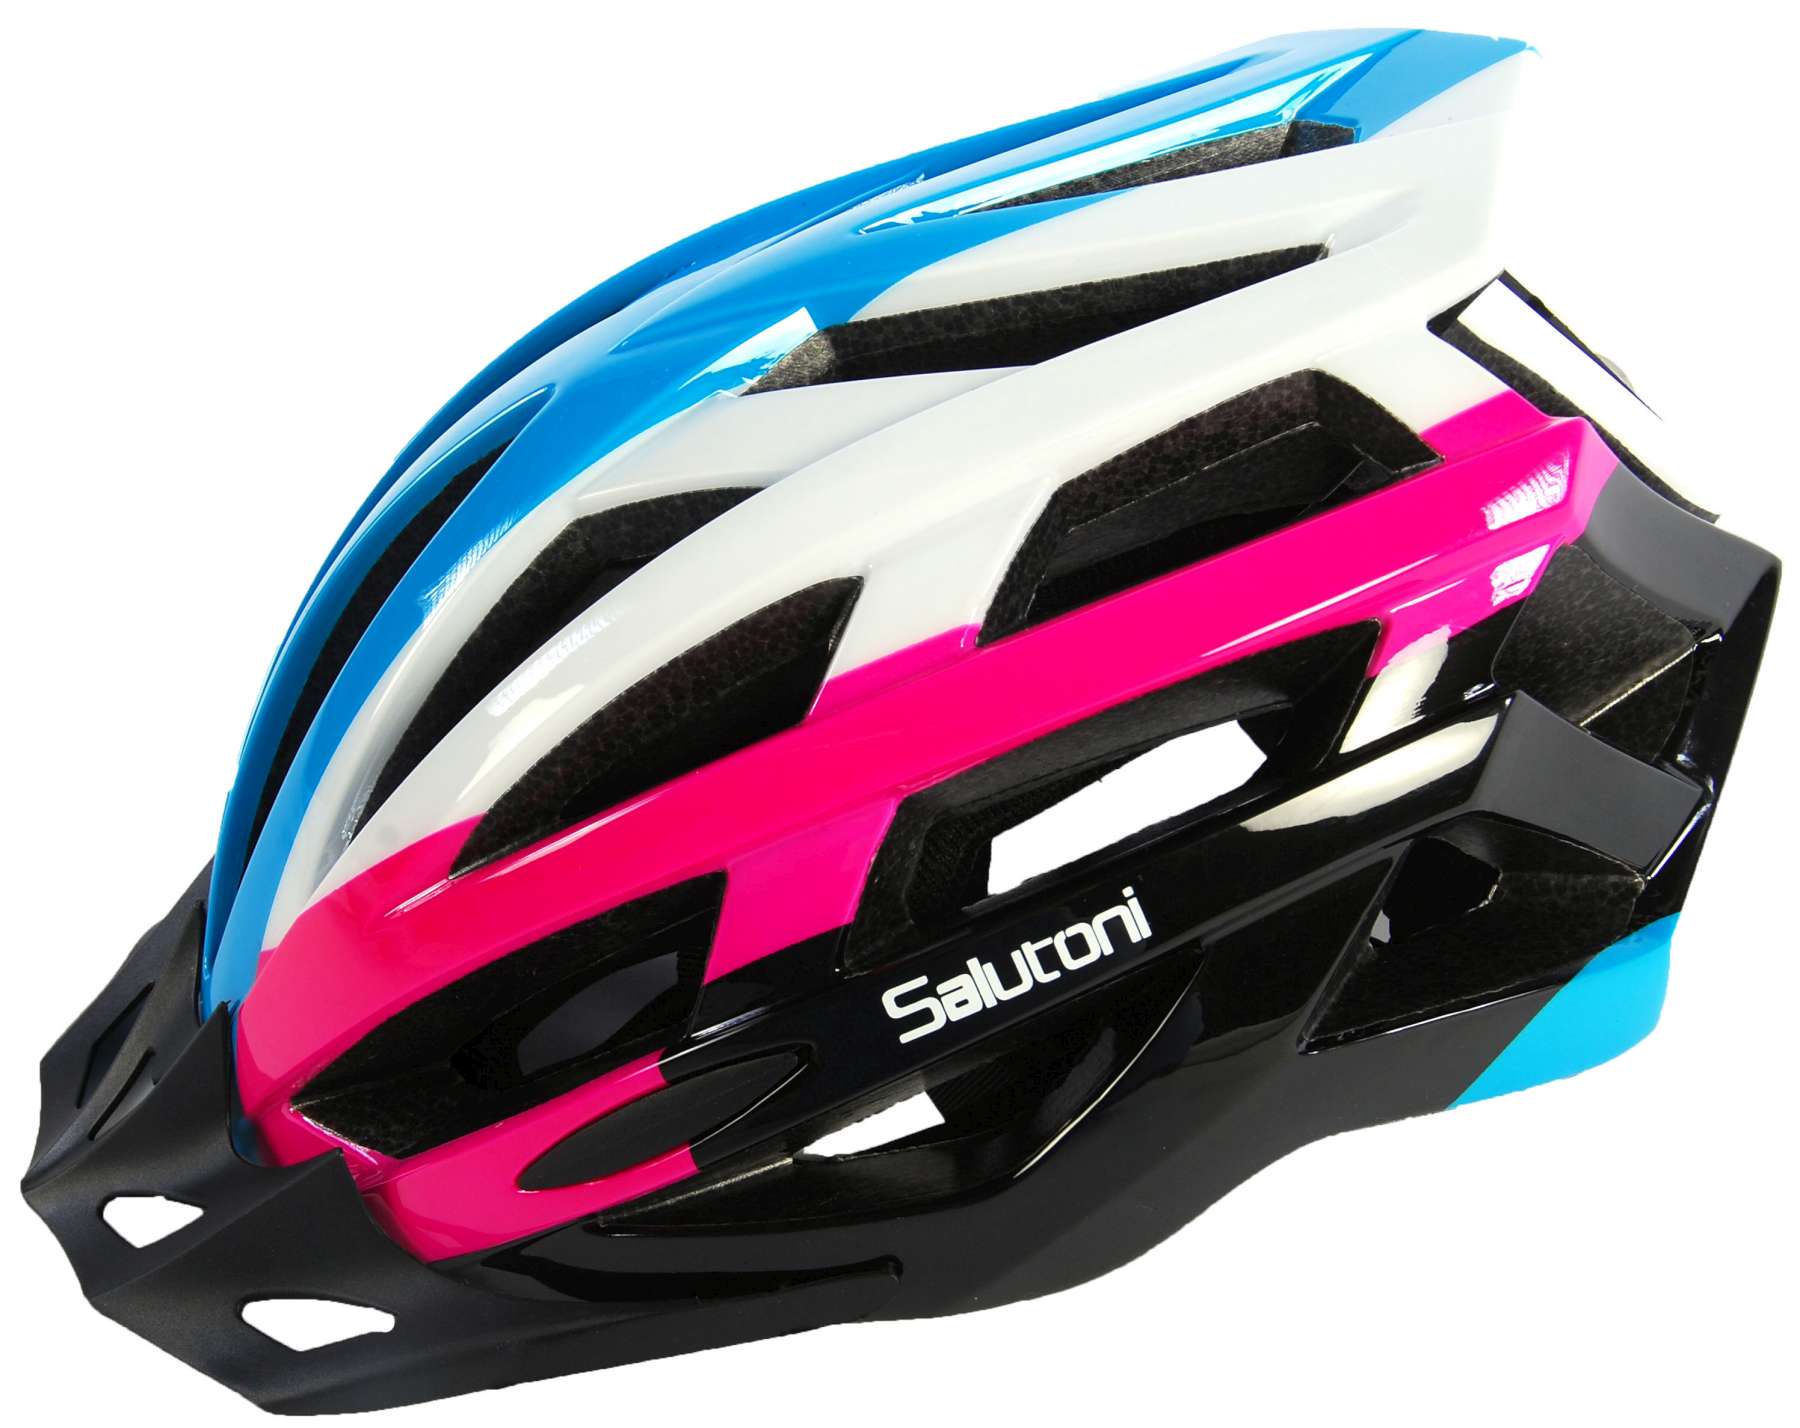 blue helmet for bike